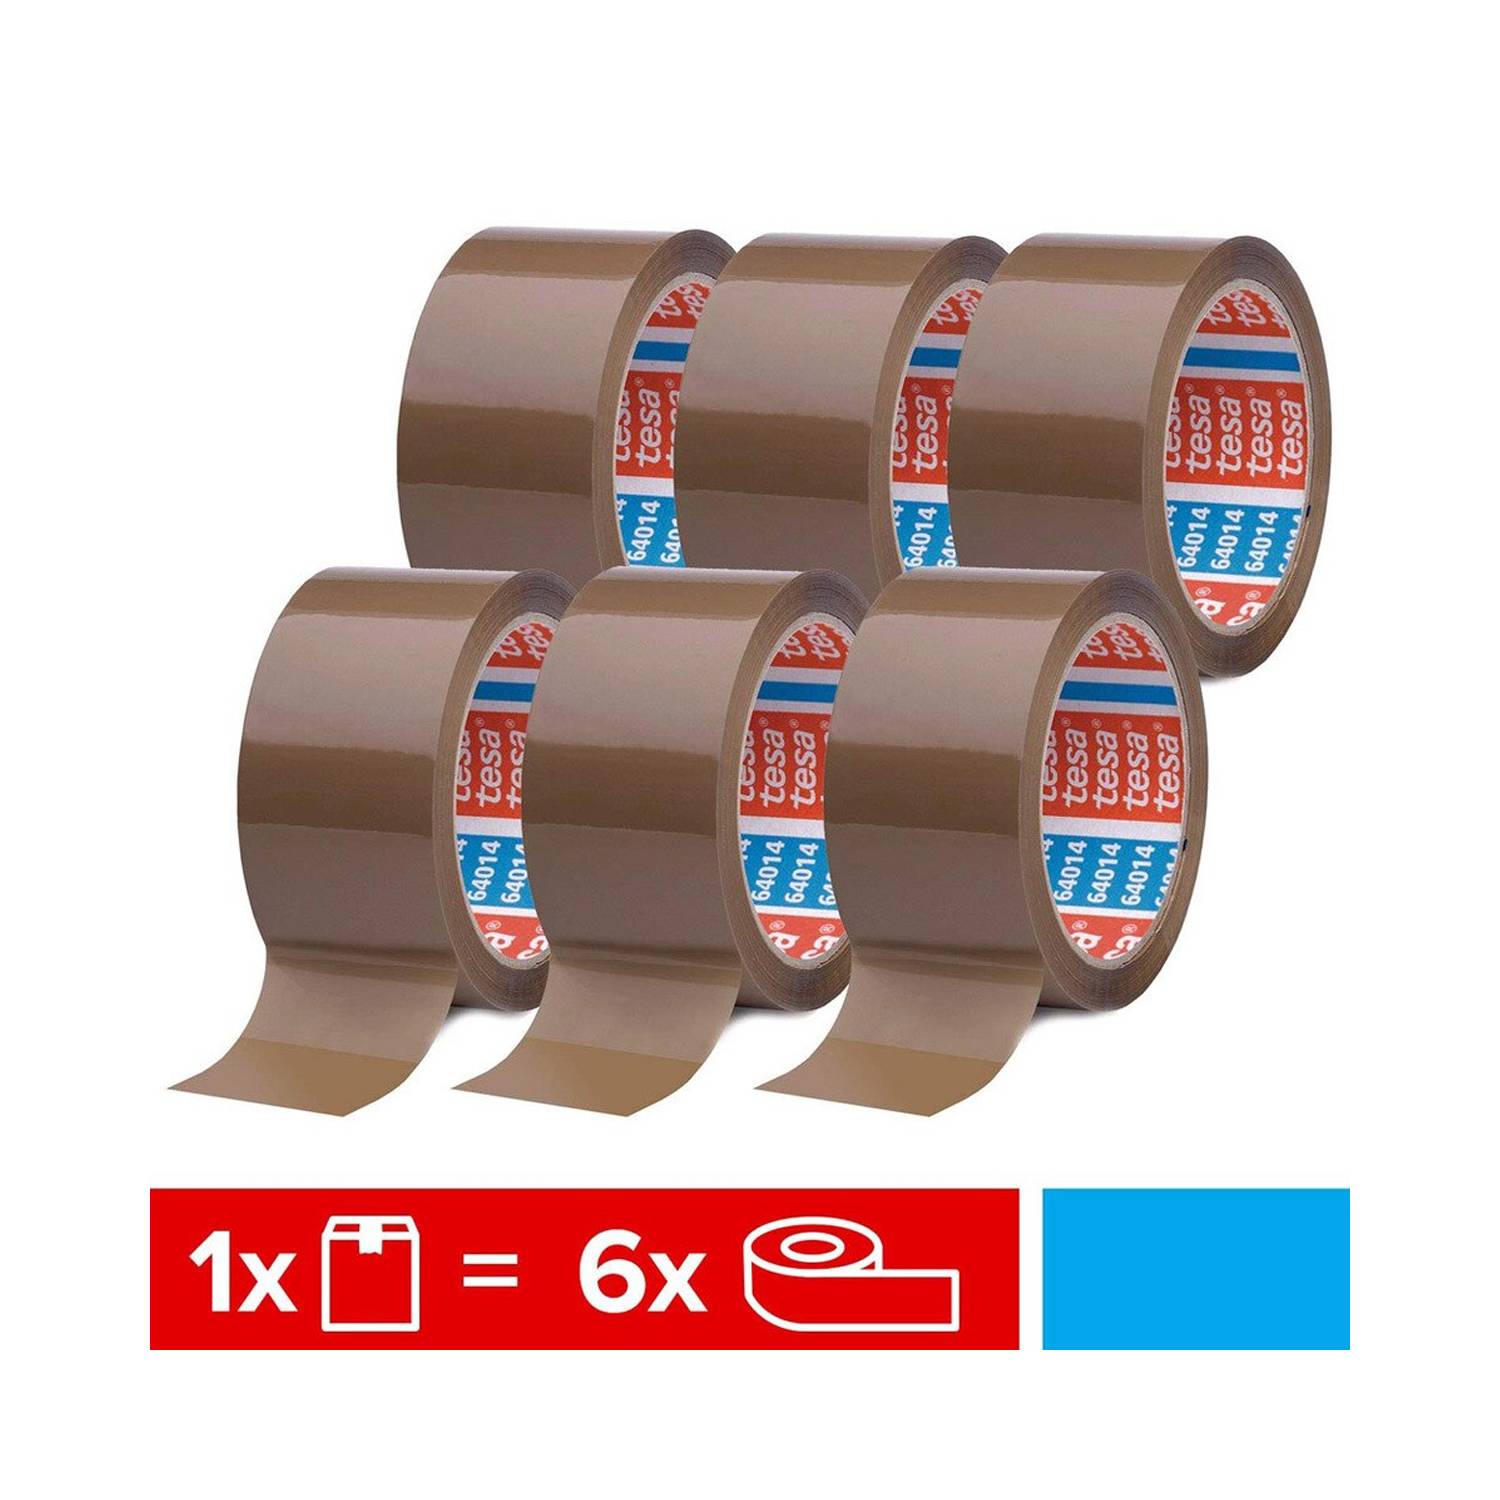 Rollo cinta adhesiva de tela color marrón de 50mm x 50m Marca TESA